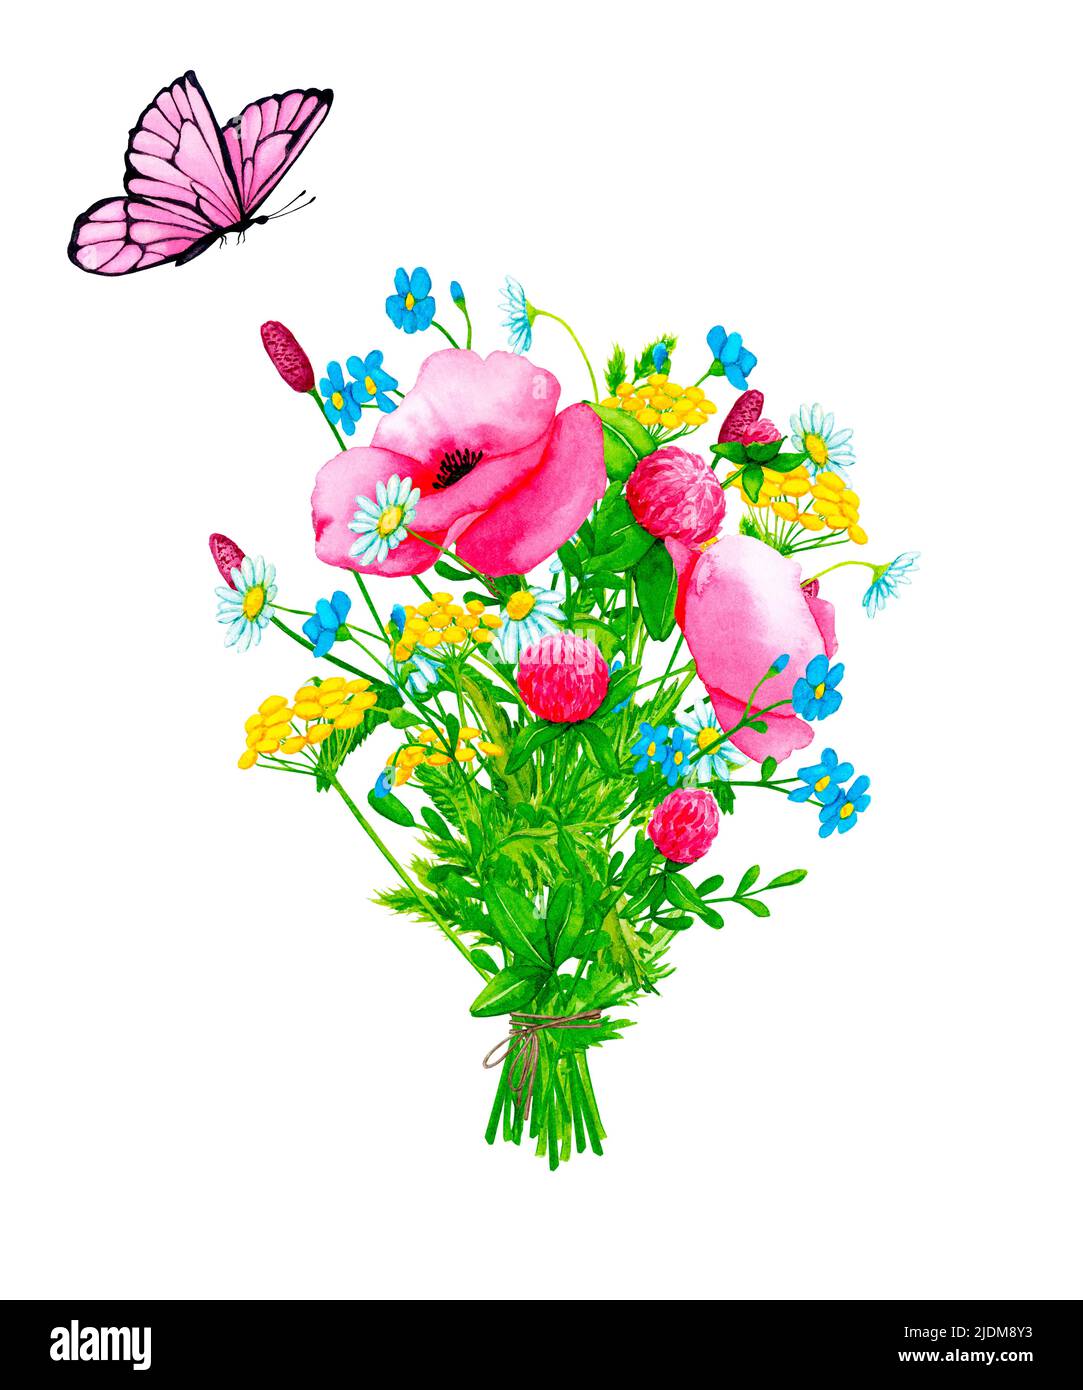 Bouquet von bunten Feldblumen mit einem Schmetterling. Handgezeichneter Clipart mit Aquarellfarben. Designelemente für Karten, Einladungen, Poster, Stoffdruck. Stockfoto